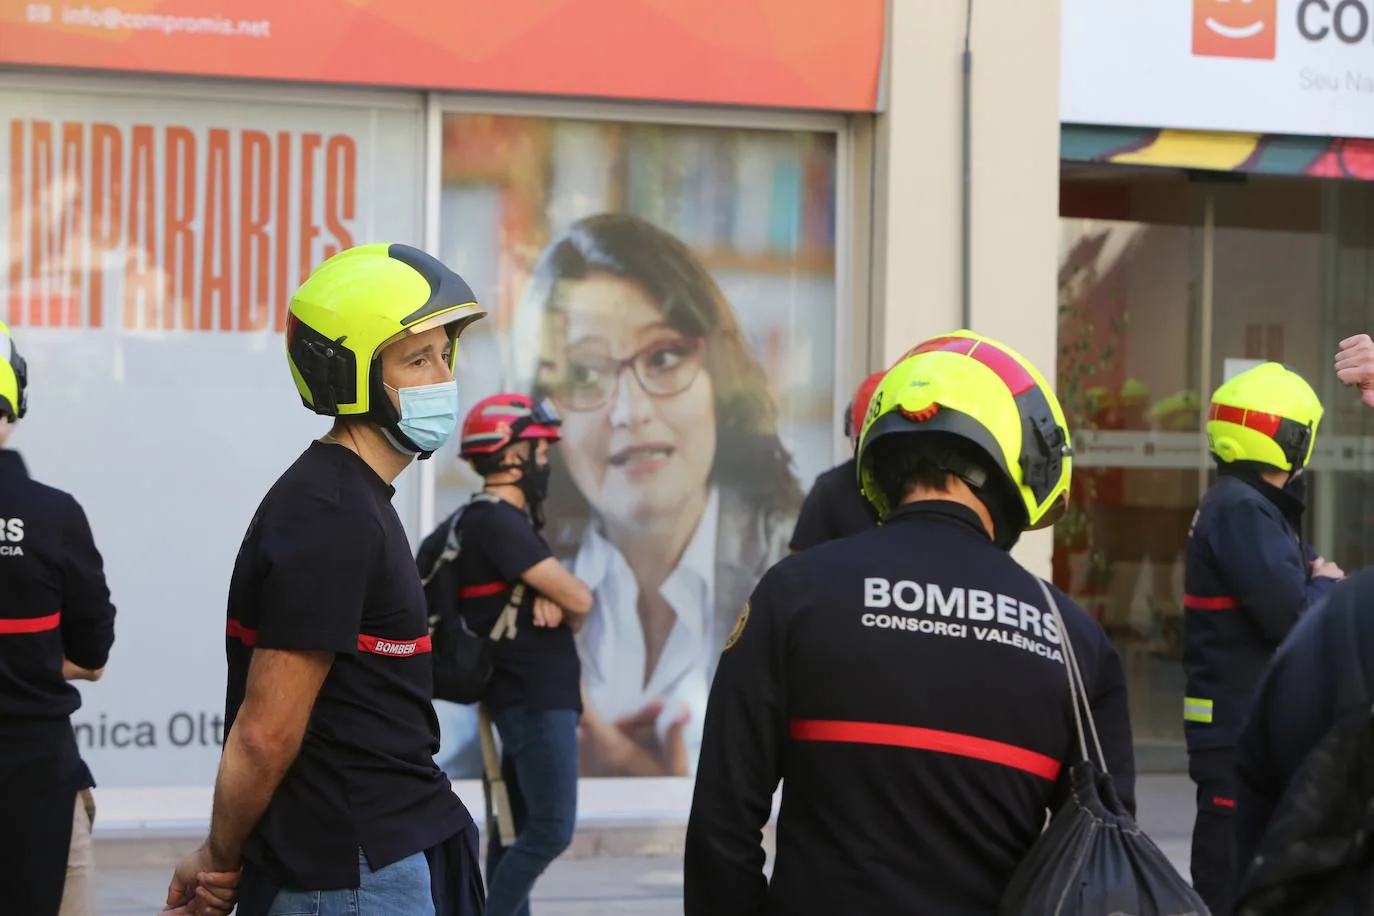 Bomberos consorcio bomberos Valencia protestan desde su movil las condiciones laborales